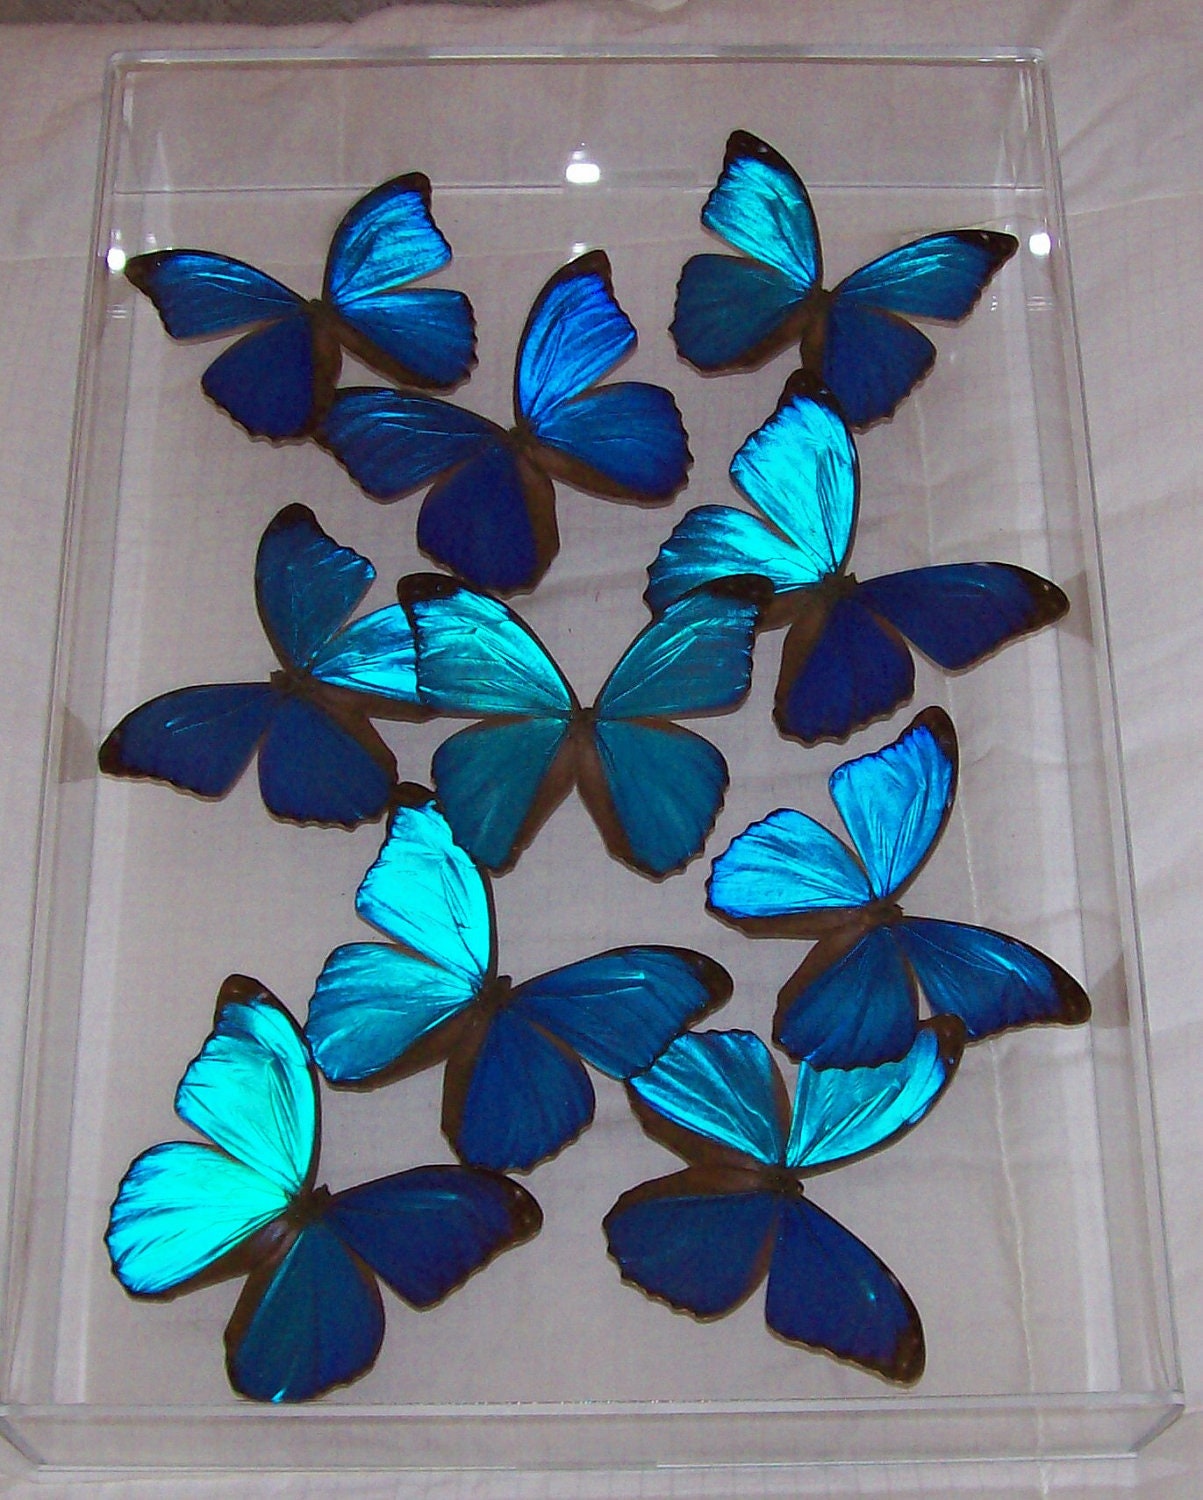 Real Stunning Swarm of Iridescent Blue Morpho Butterflies - ButterflyArtwork